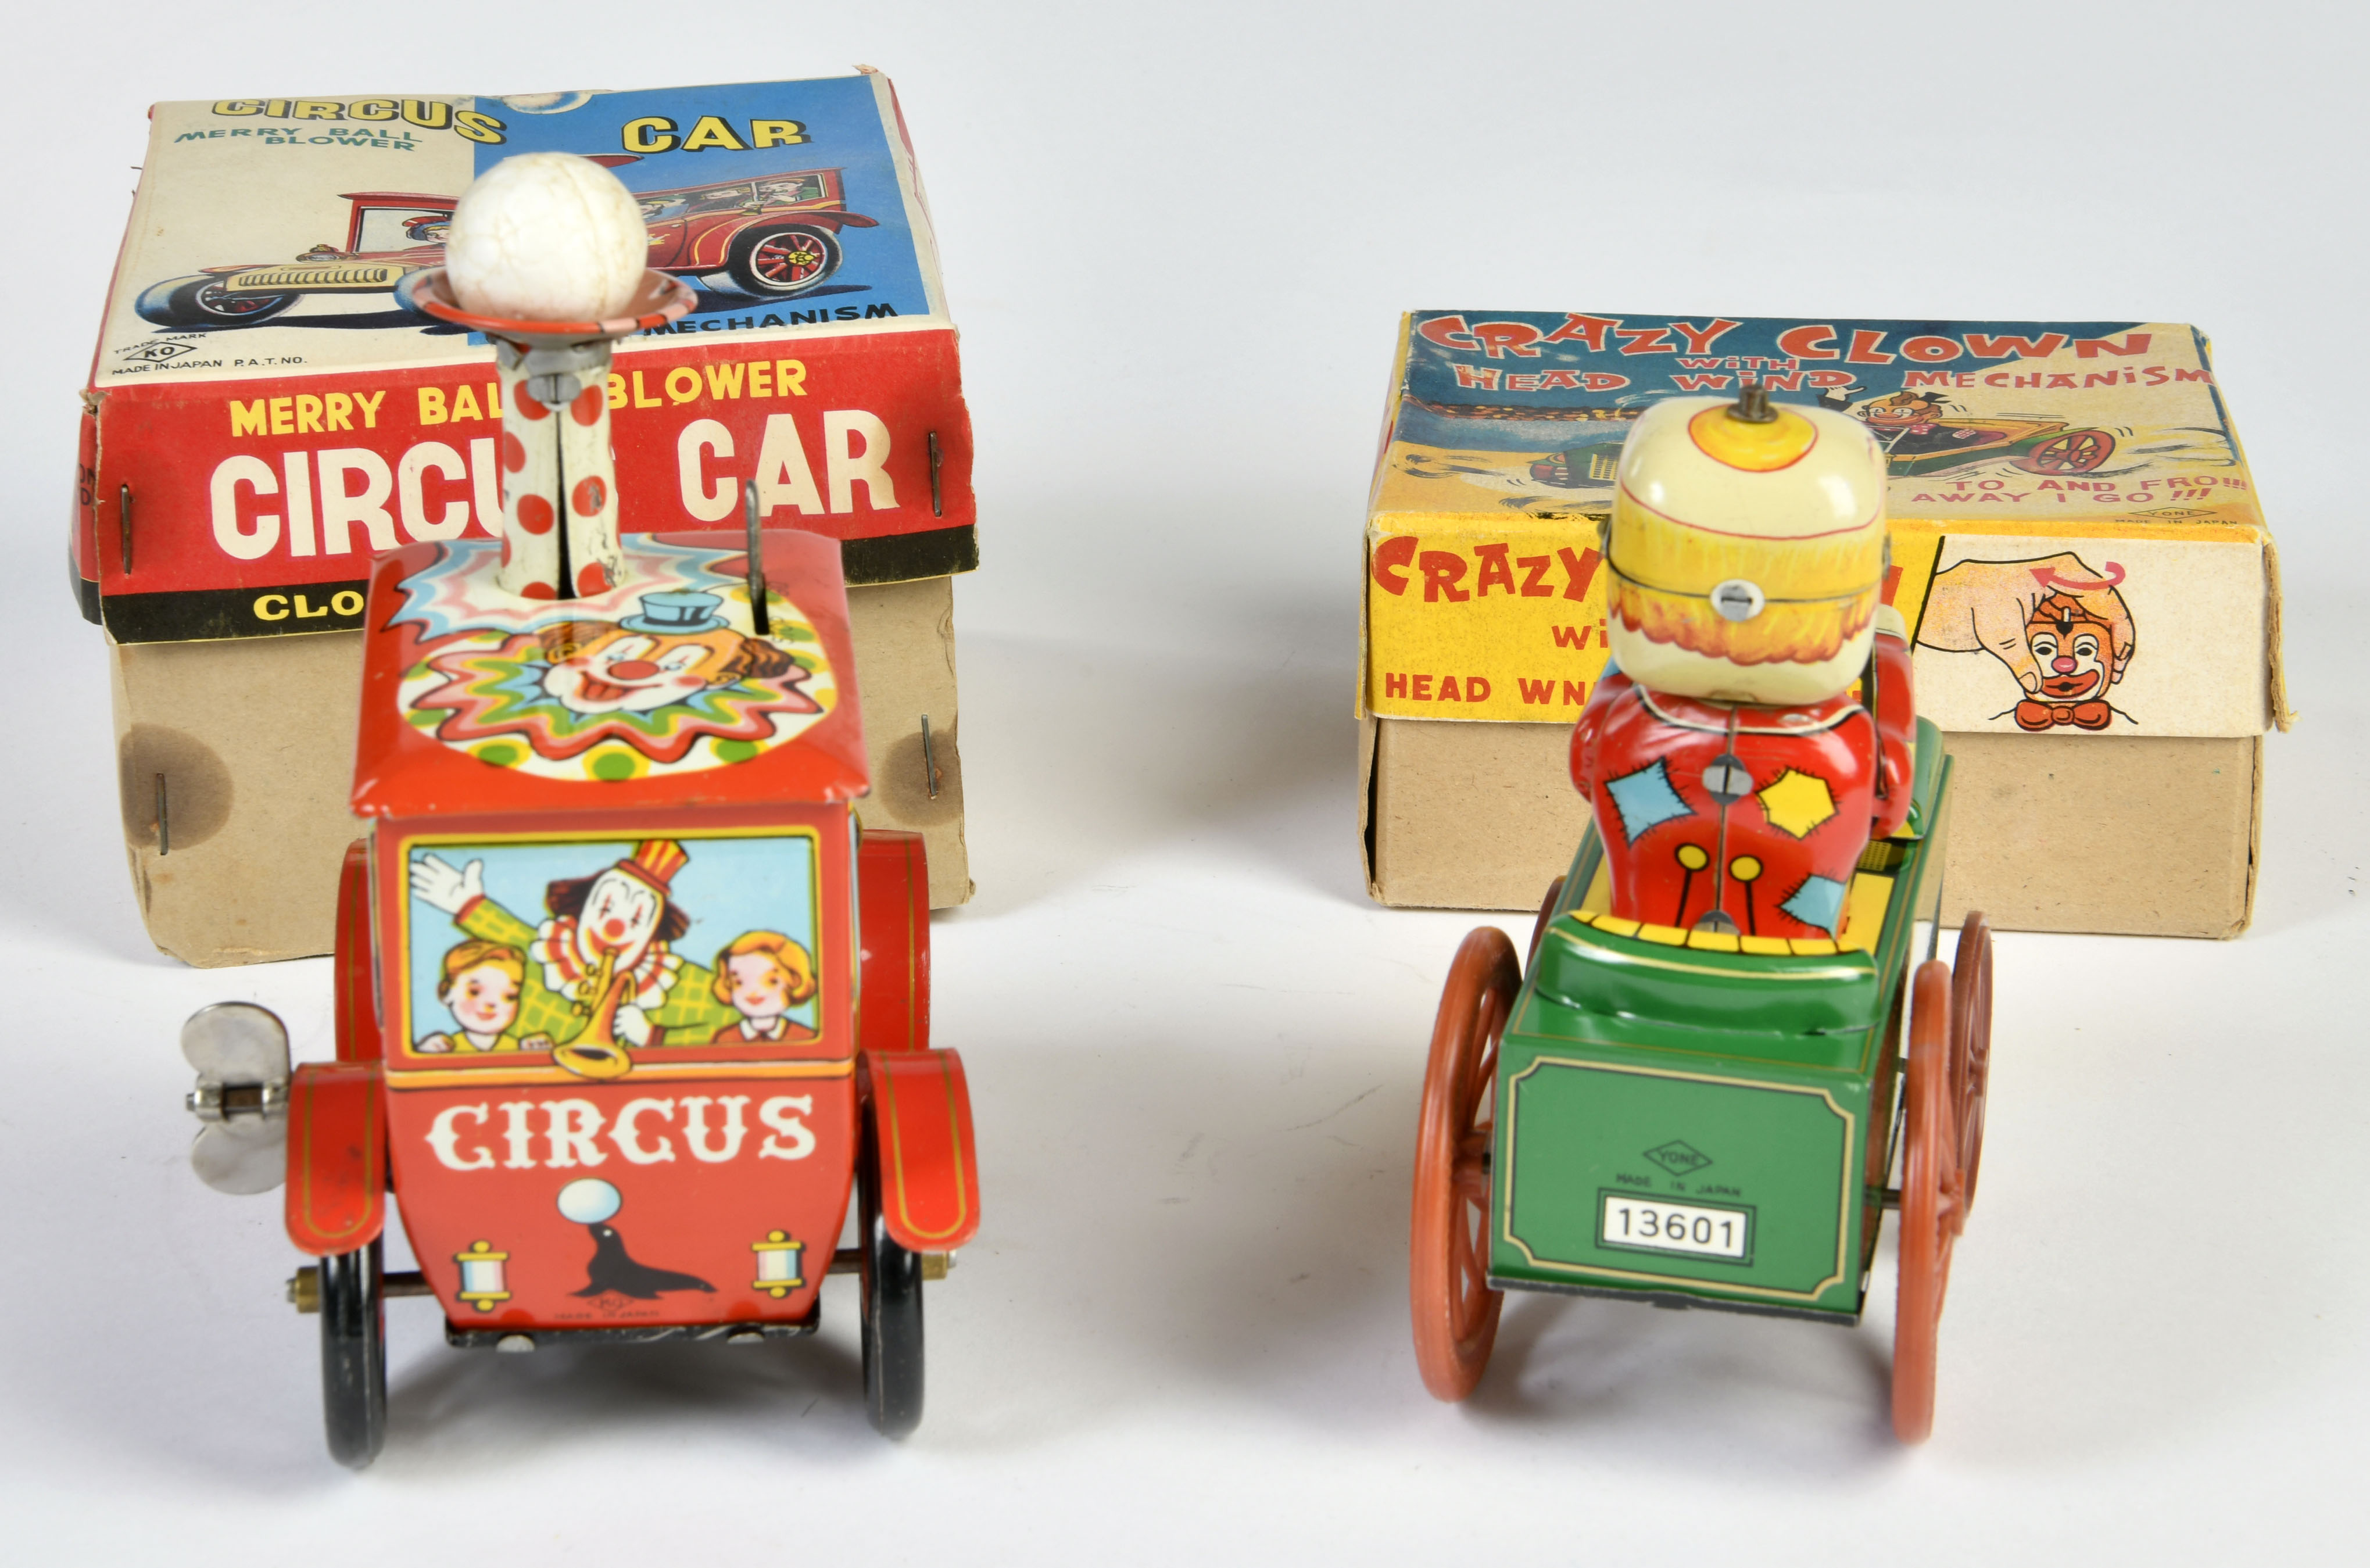 Circus Car & Crazy Clown Car, Japan, 12 cm, tin, friction ok, box, C 1-2 - Image 2 of 3